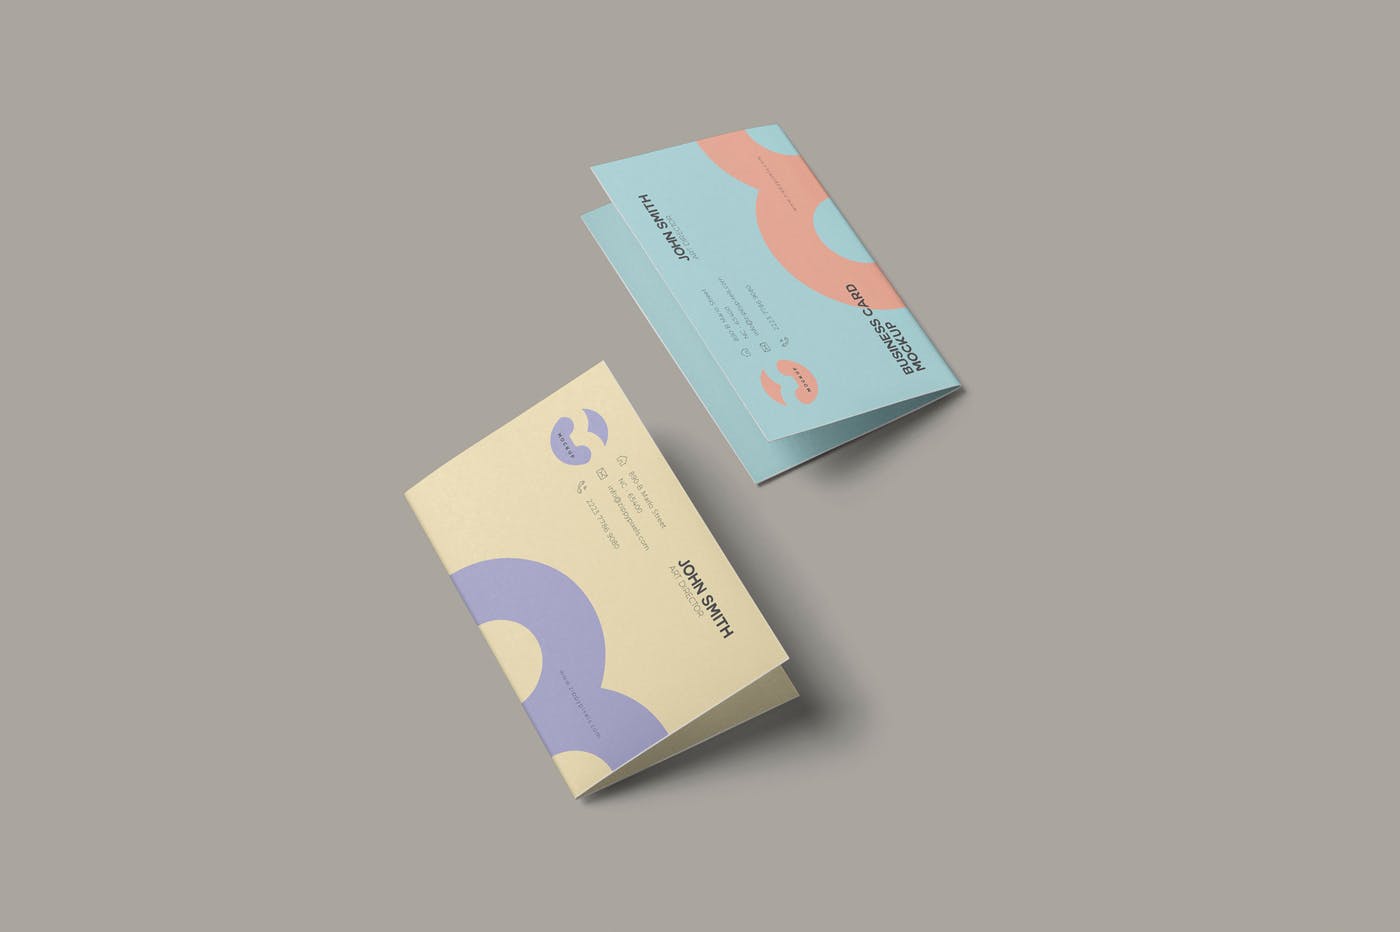 折叠式名片设计效果图样机模板 Folded Business Card Mockup插图(3)